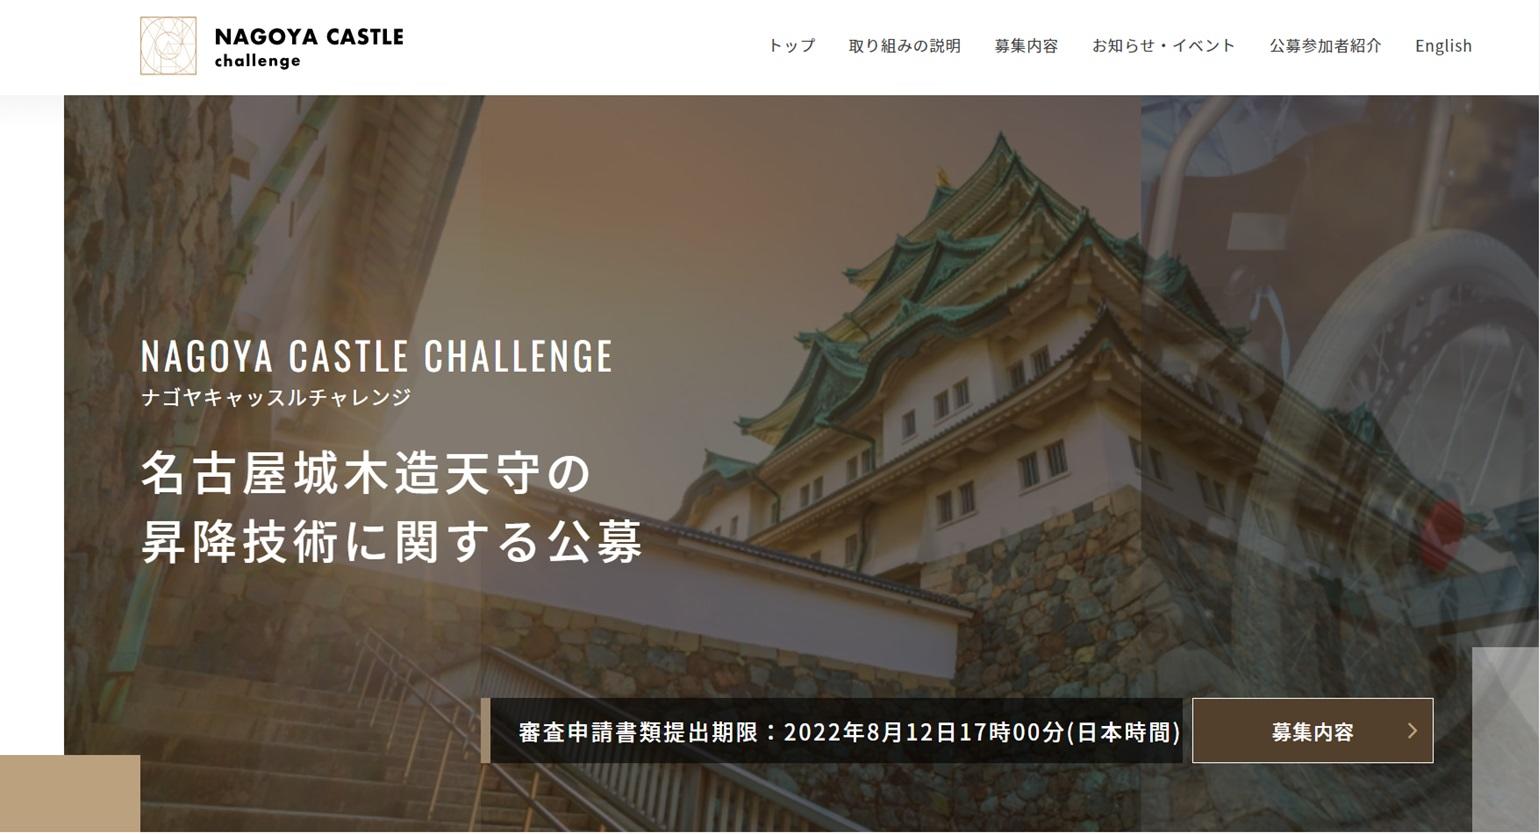 名古屋市公式ウェブサイト「名古屋城木造天守の昇降技術に関する公募」のサムネイル（クリックすると当該サイトへ移動します。）